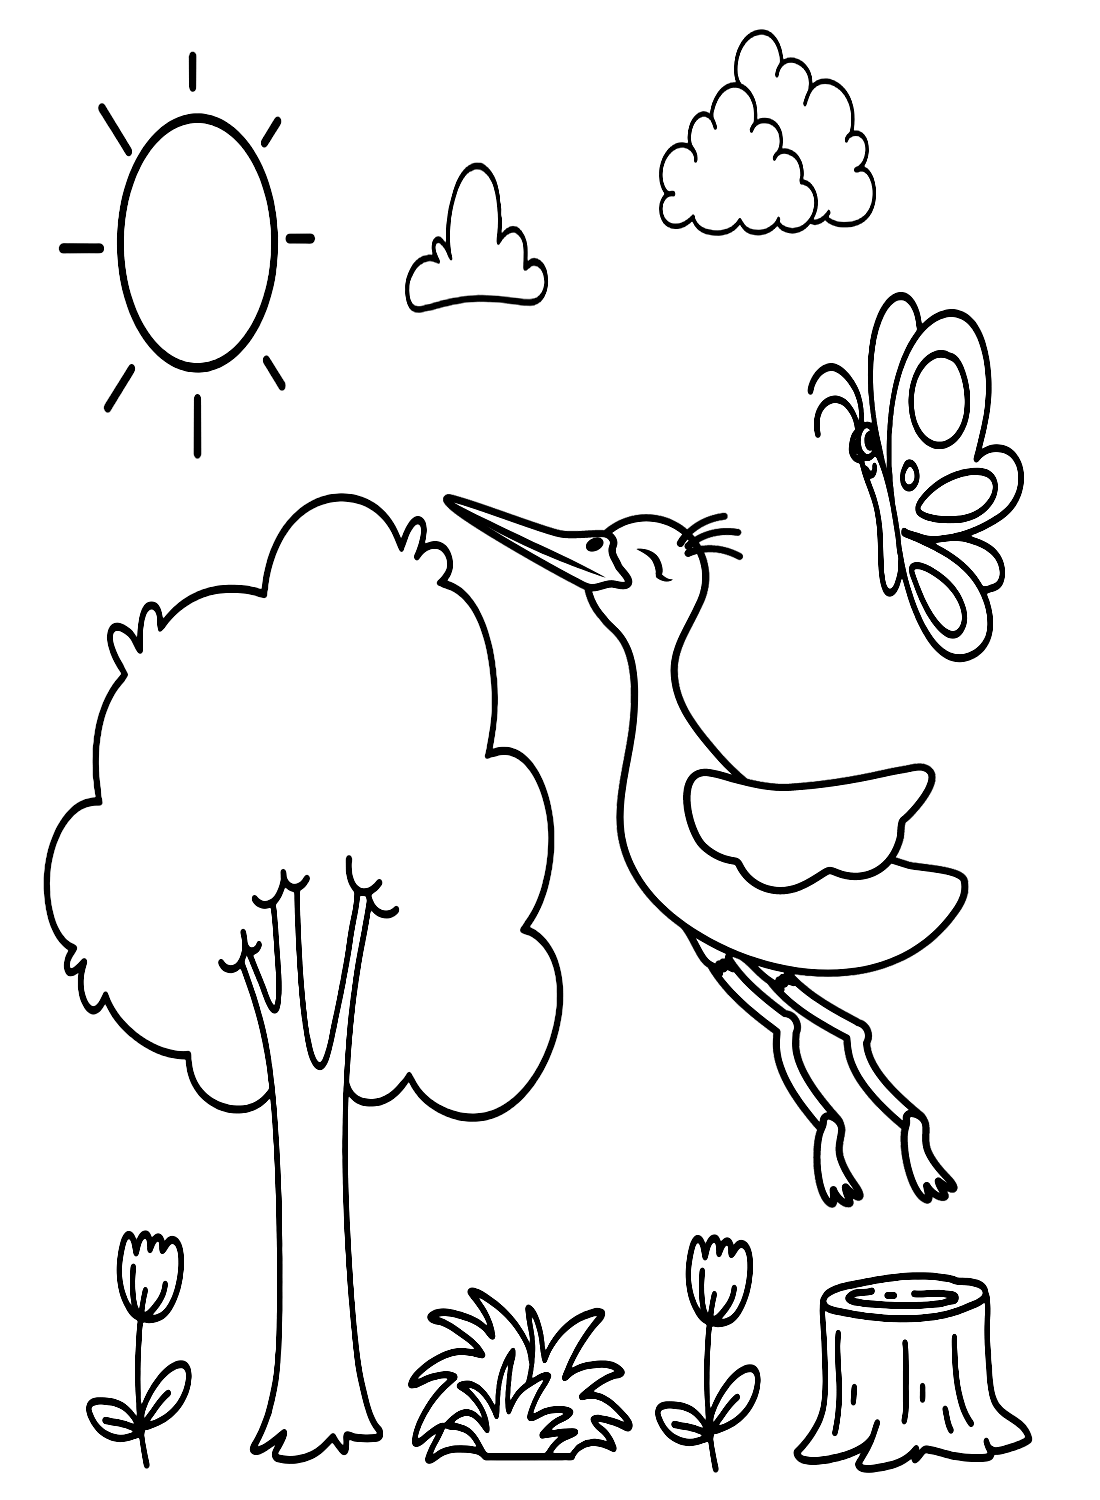 Cigogne heureuse de Stork